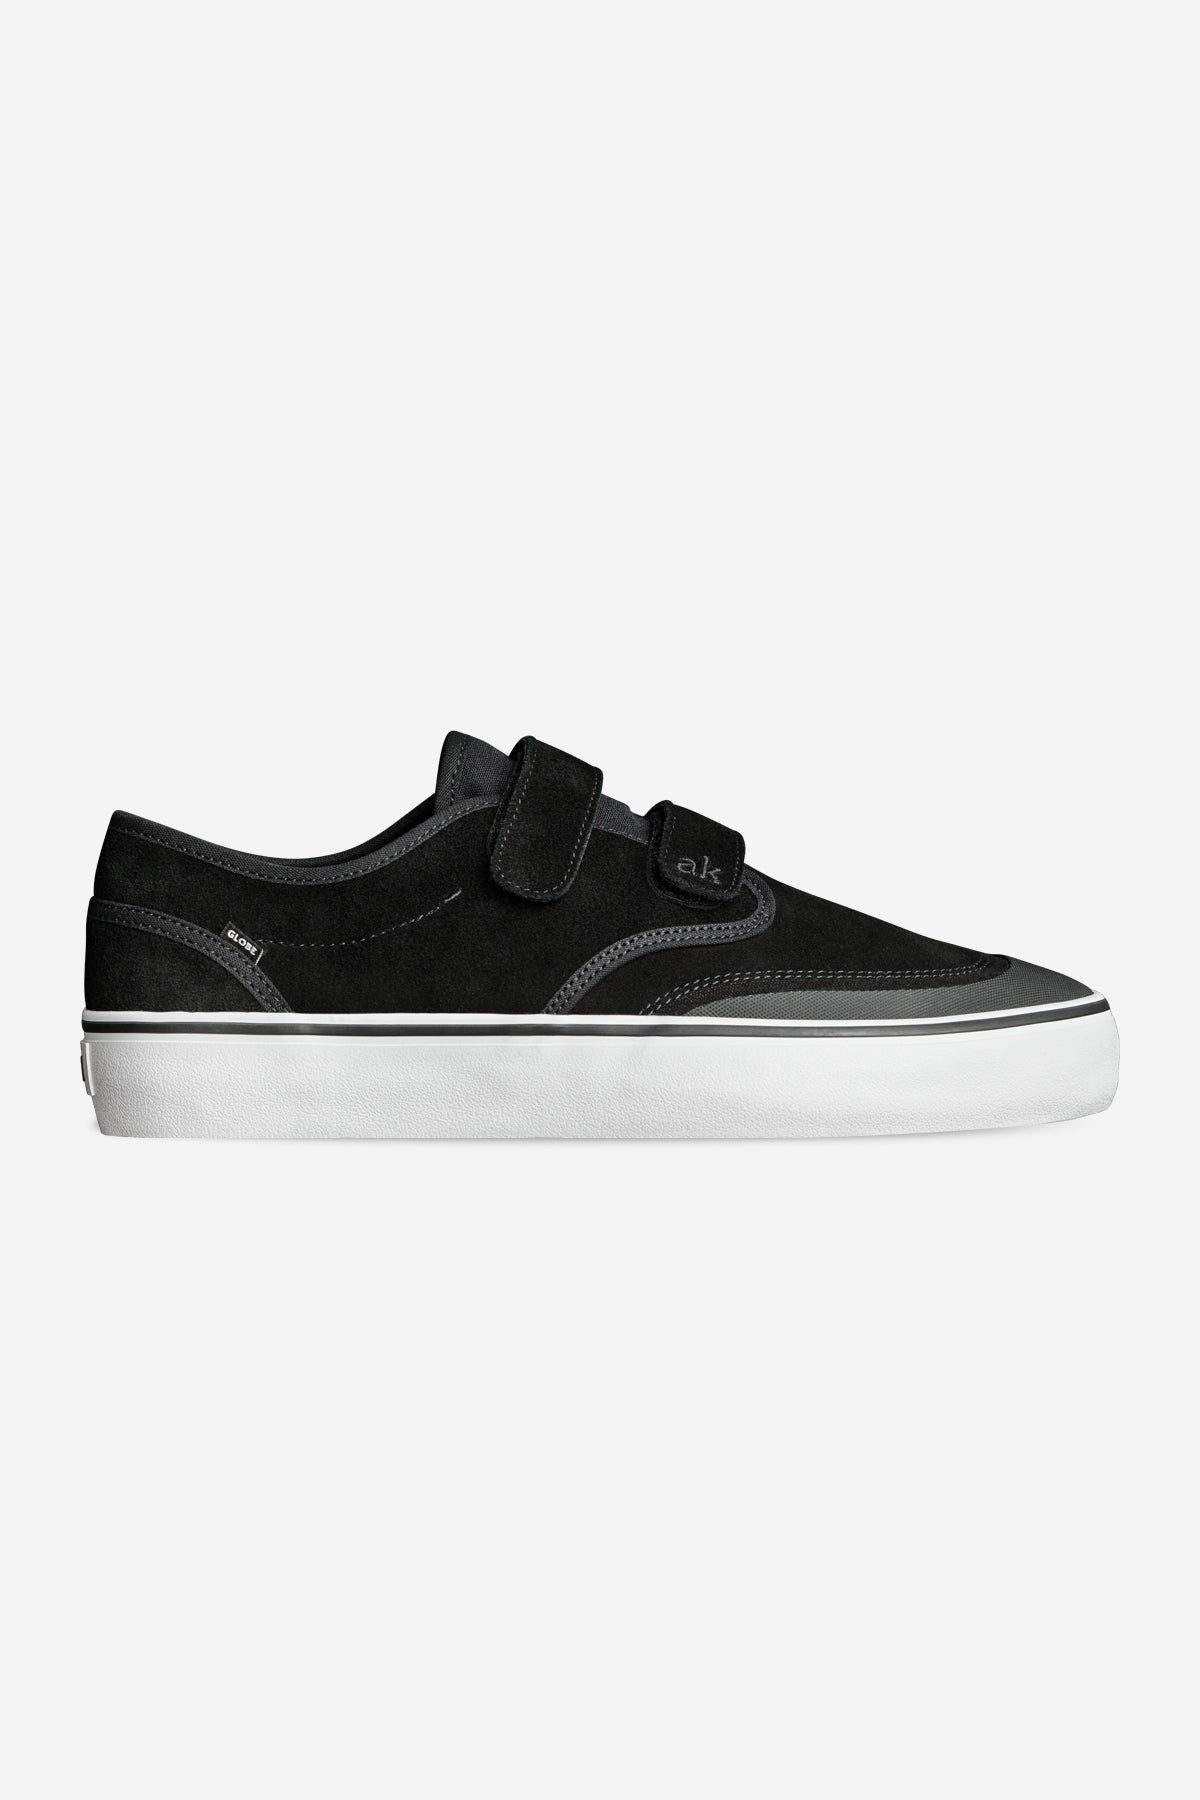 motley ii strap negro white skateboard  zapatos